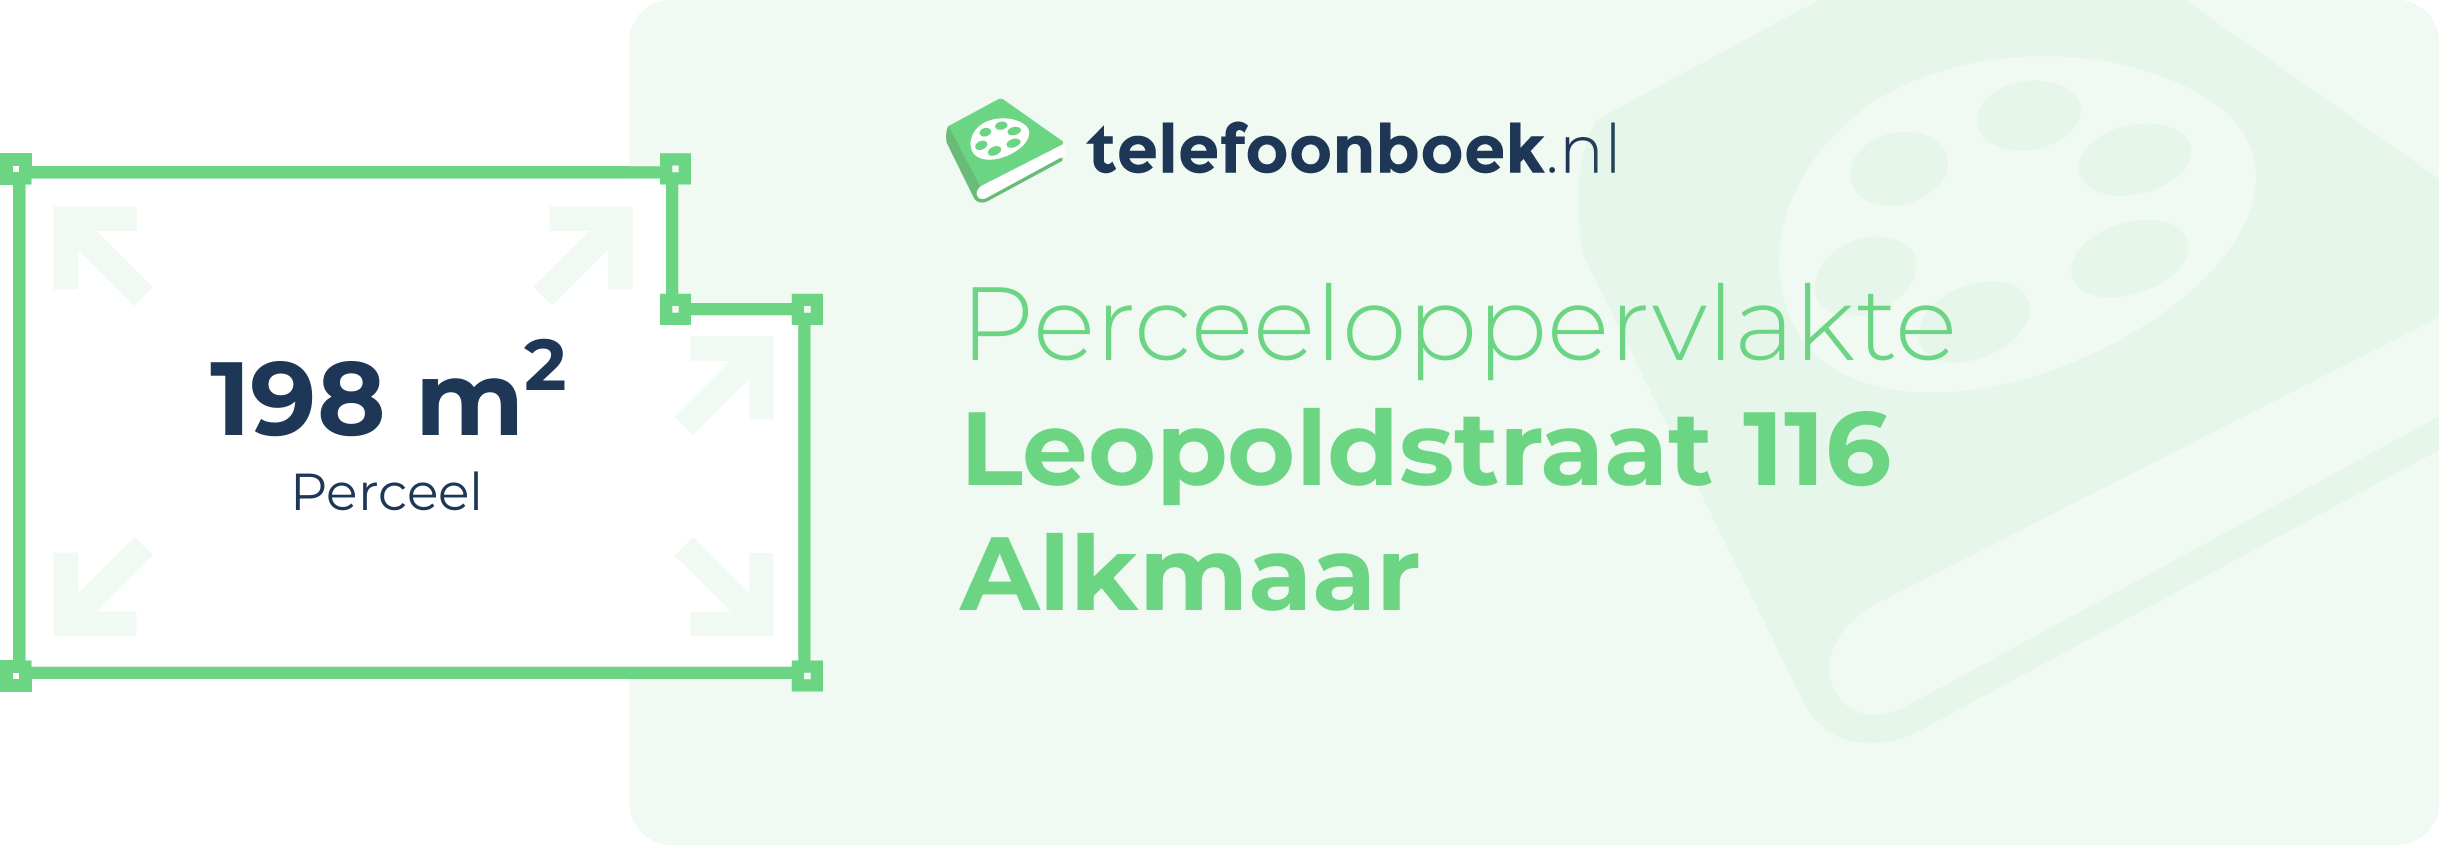 Perceeloppervlakte Leopoldstraat 116 Alkmaar